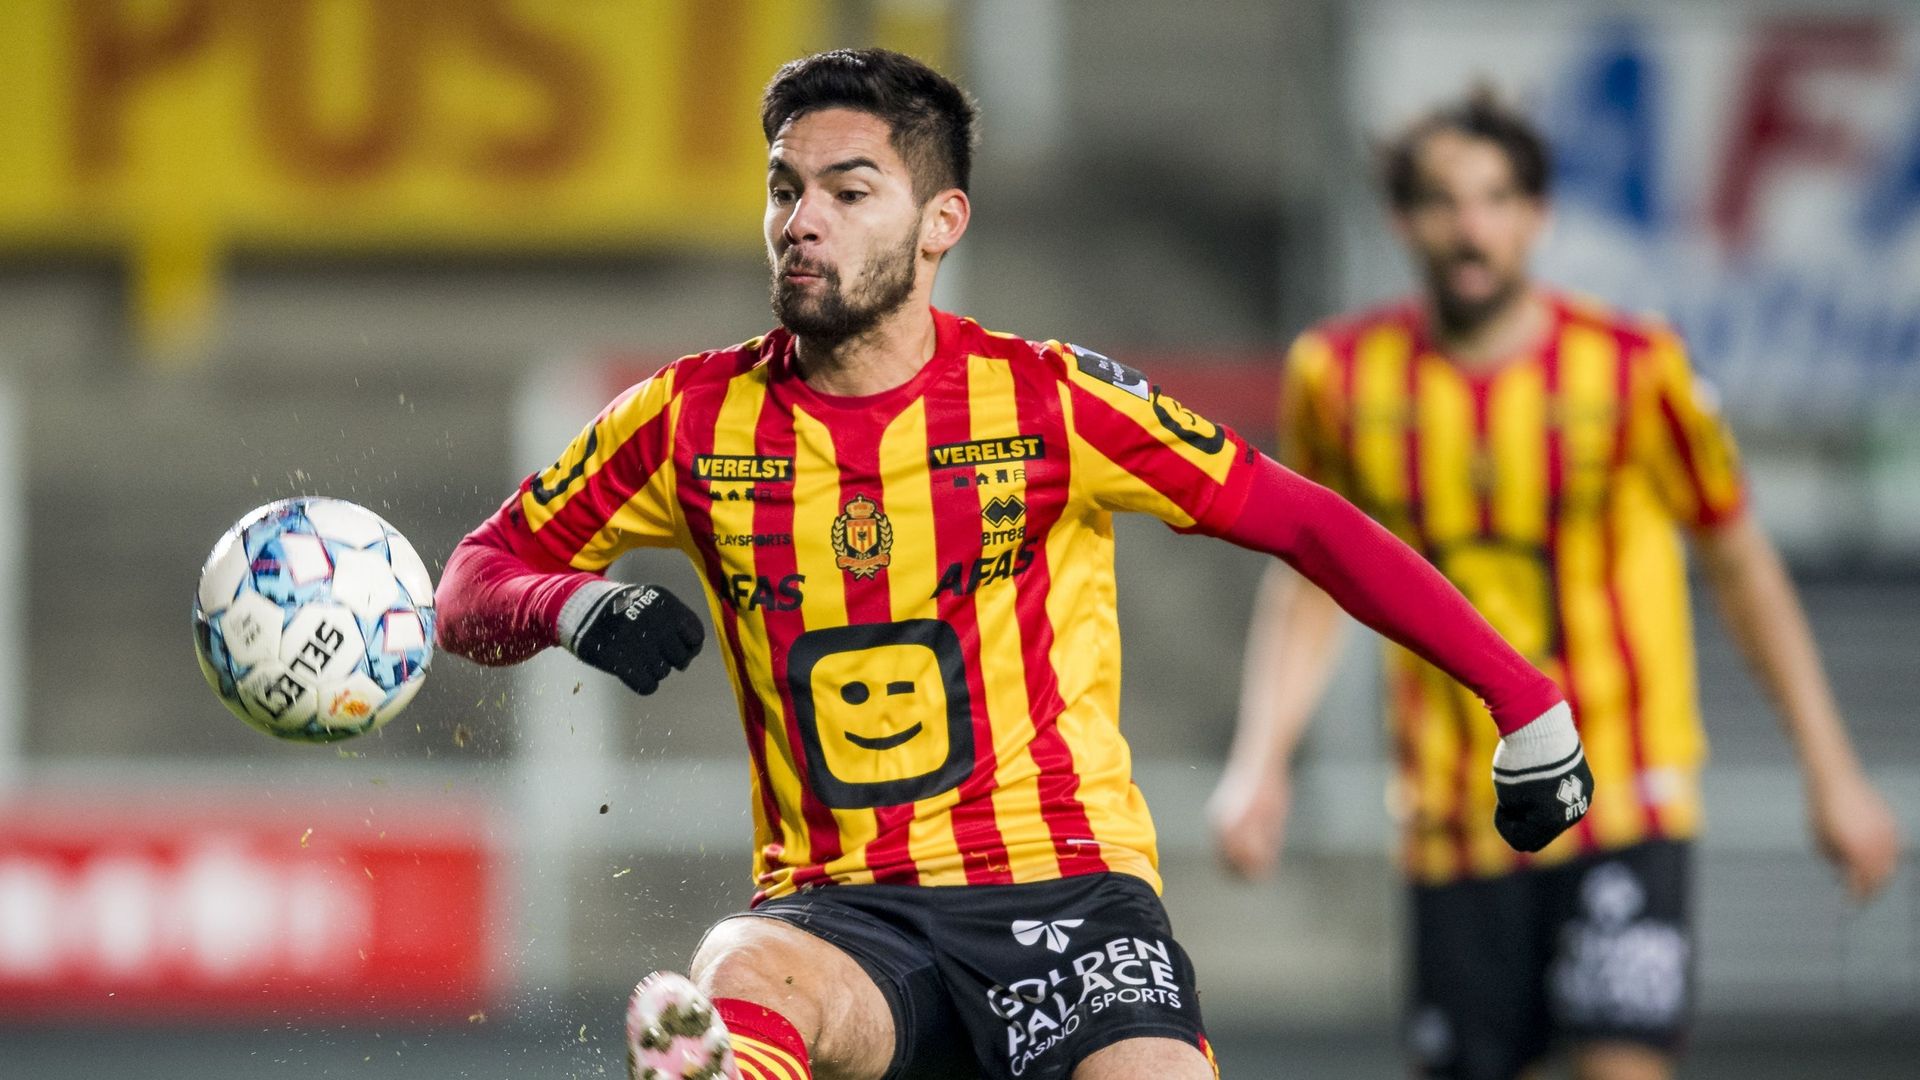 Pro League : Pas de forfait pour Malines, le match à Louvain doit être joué